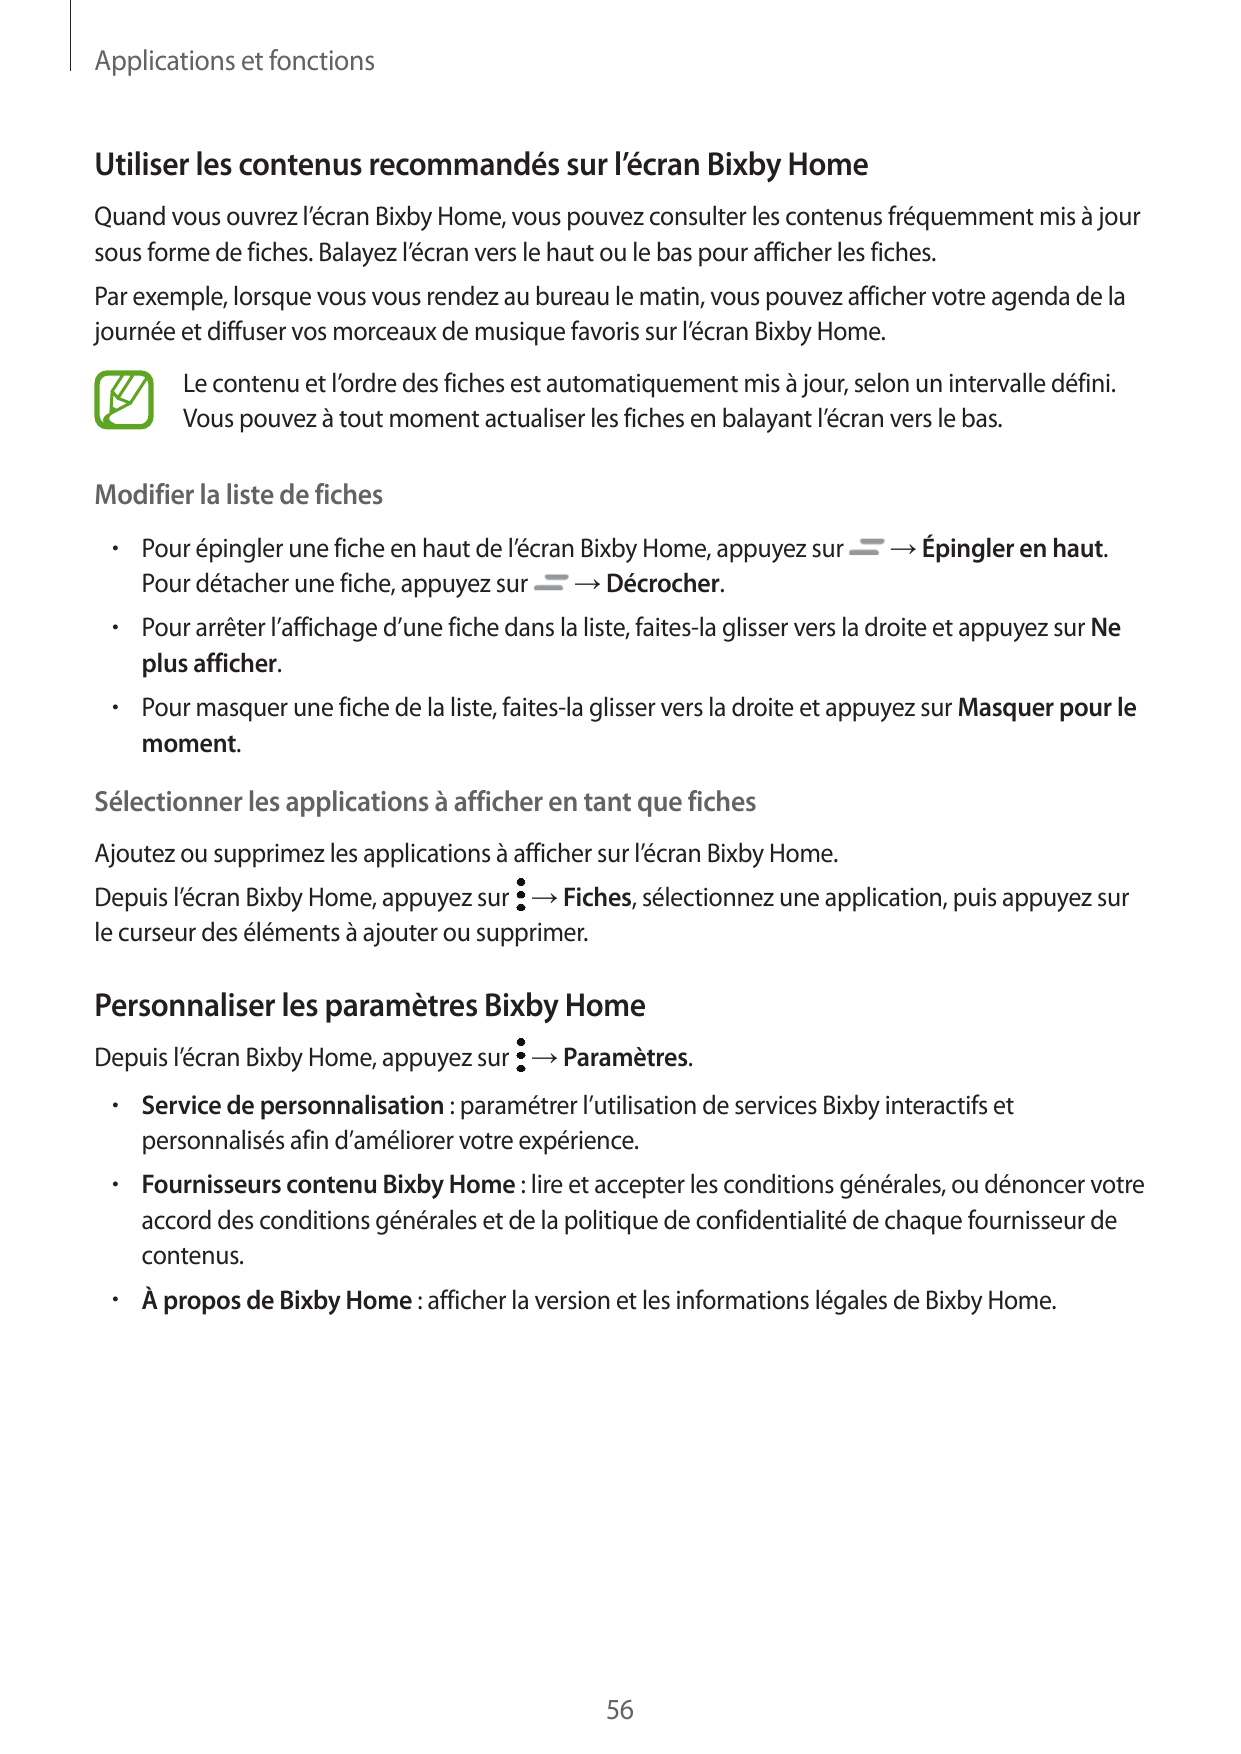 Applications et fonctionsUtiliser les contenus recommandés sur l’écran Bixby HomeQuand vous ouvrez l’écran Bixby Home, vous pouv